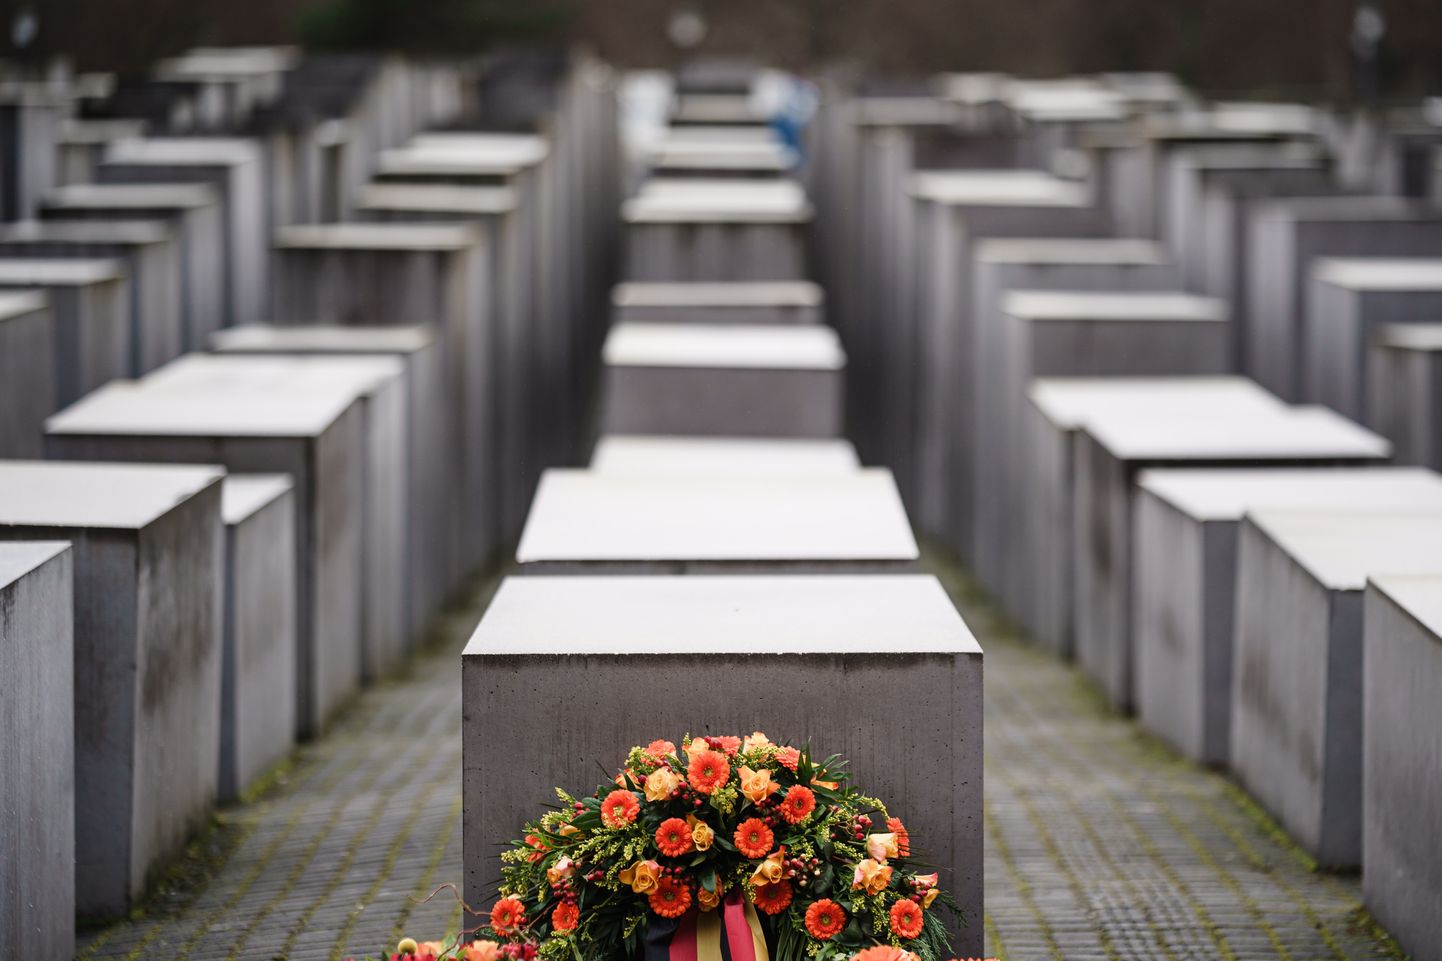 Berliinis mälestatakse holokausti ohvreid.